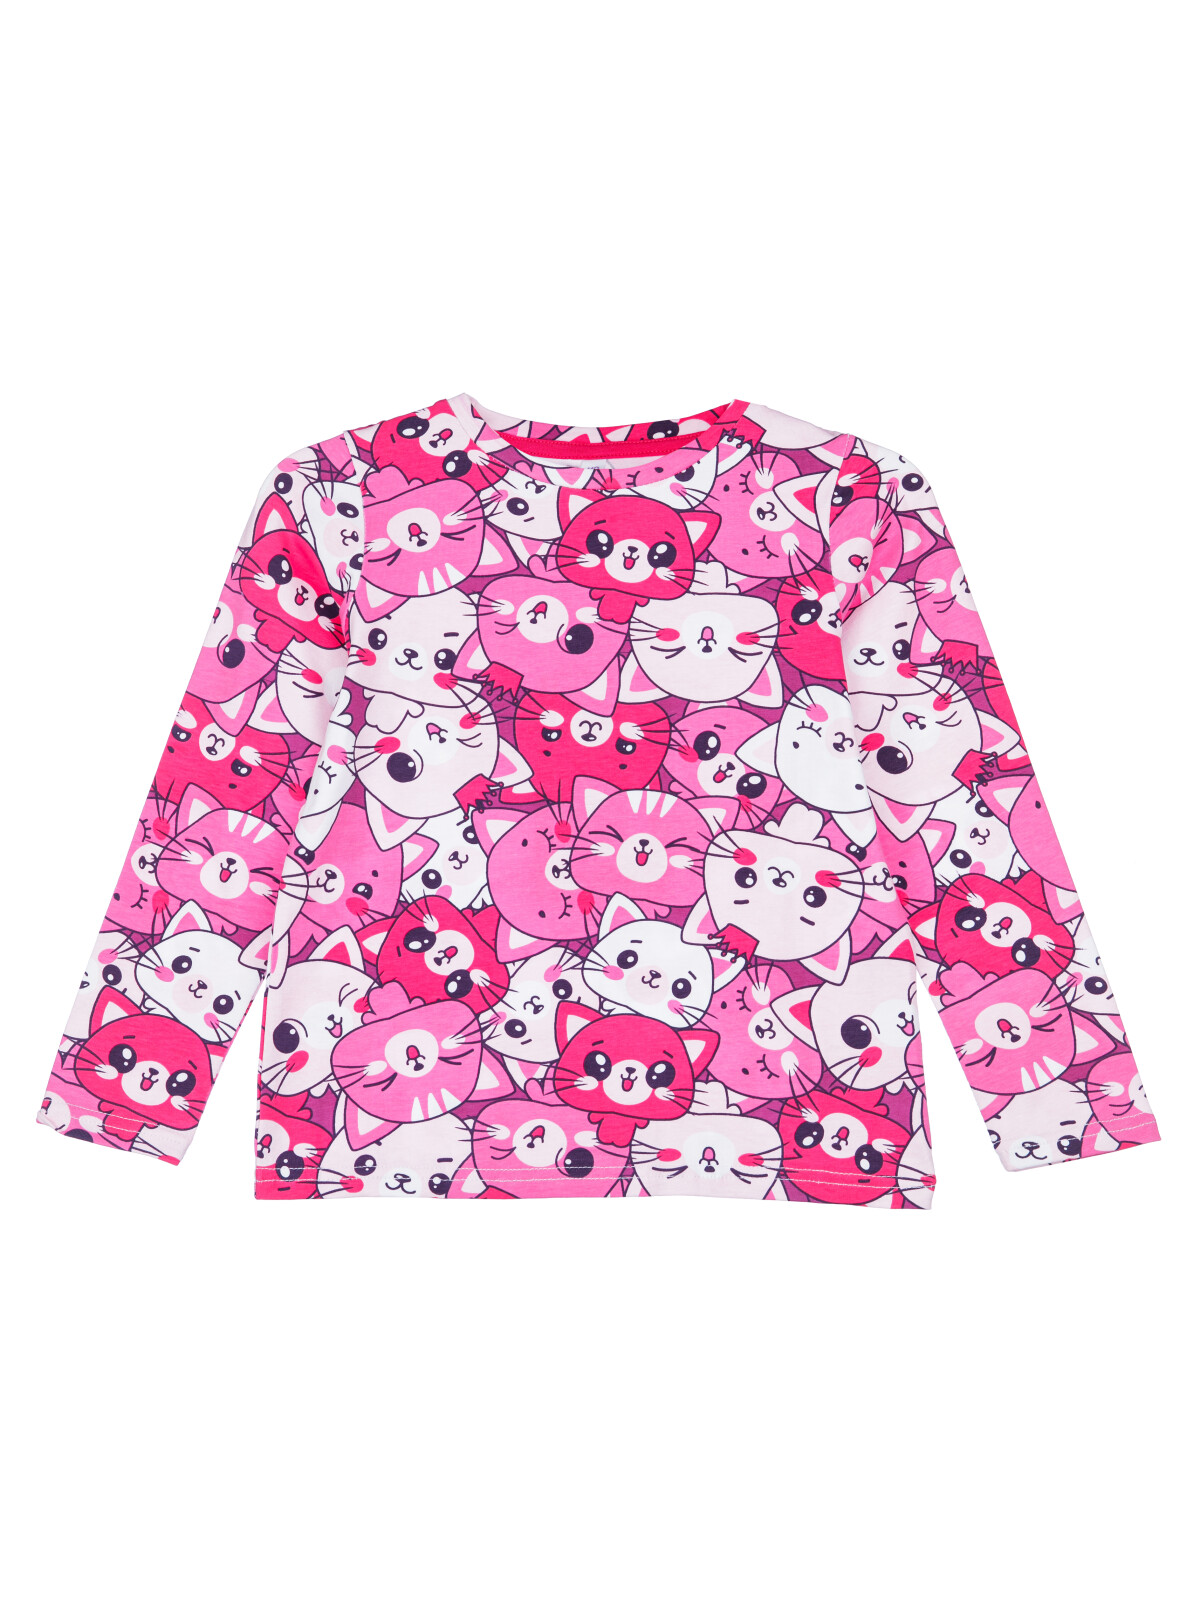 Фуфайка для девочек PlayToday (футболка), розовый,белый, 116